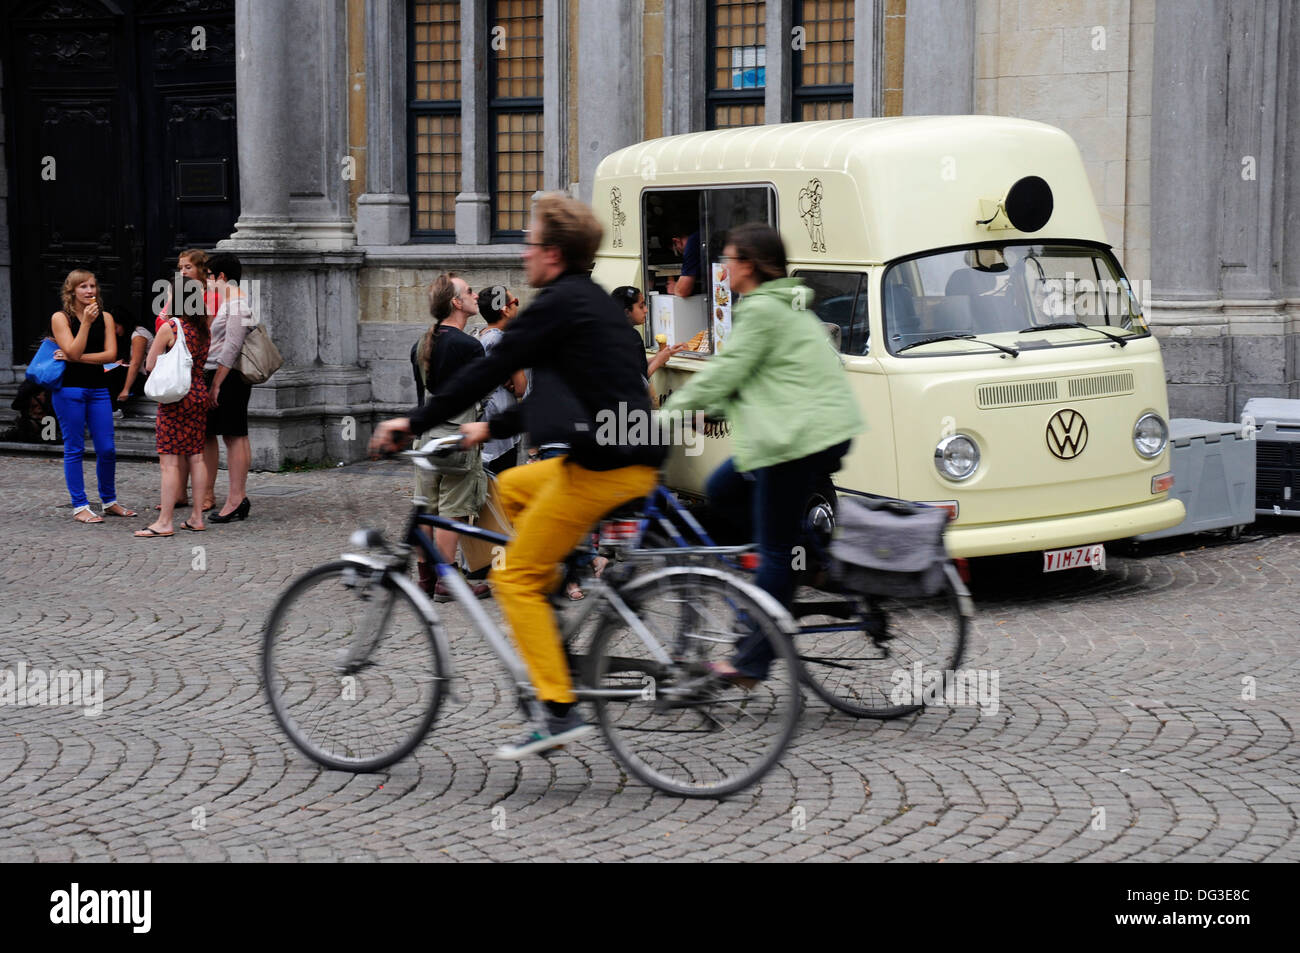 Un VW camper van utilisé comme une glace van à Bruges, Belgique Banque D'Images